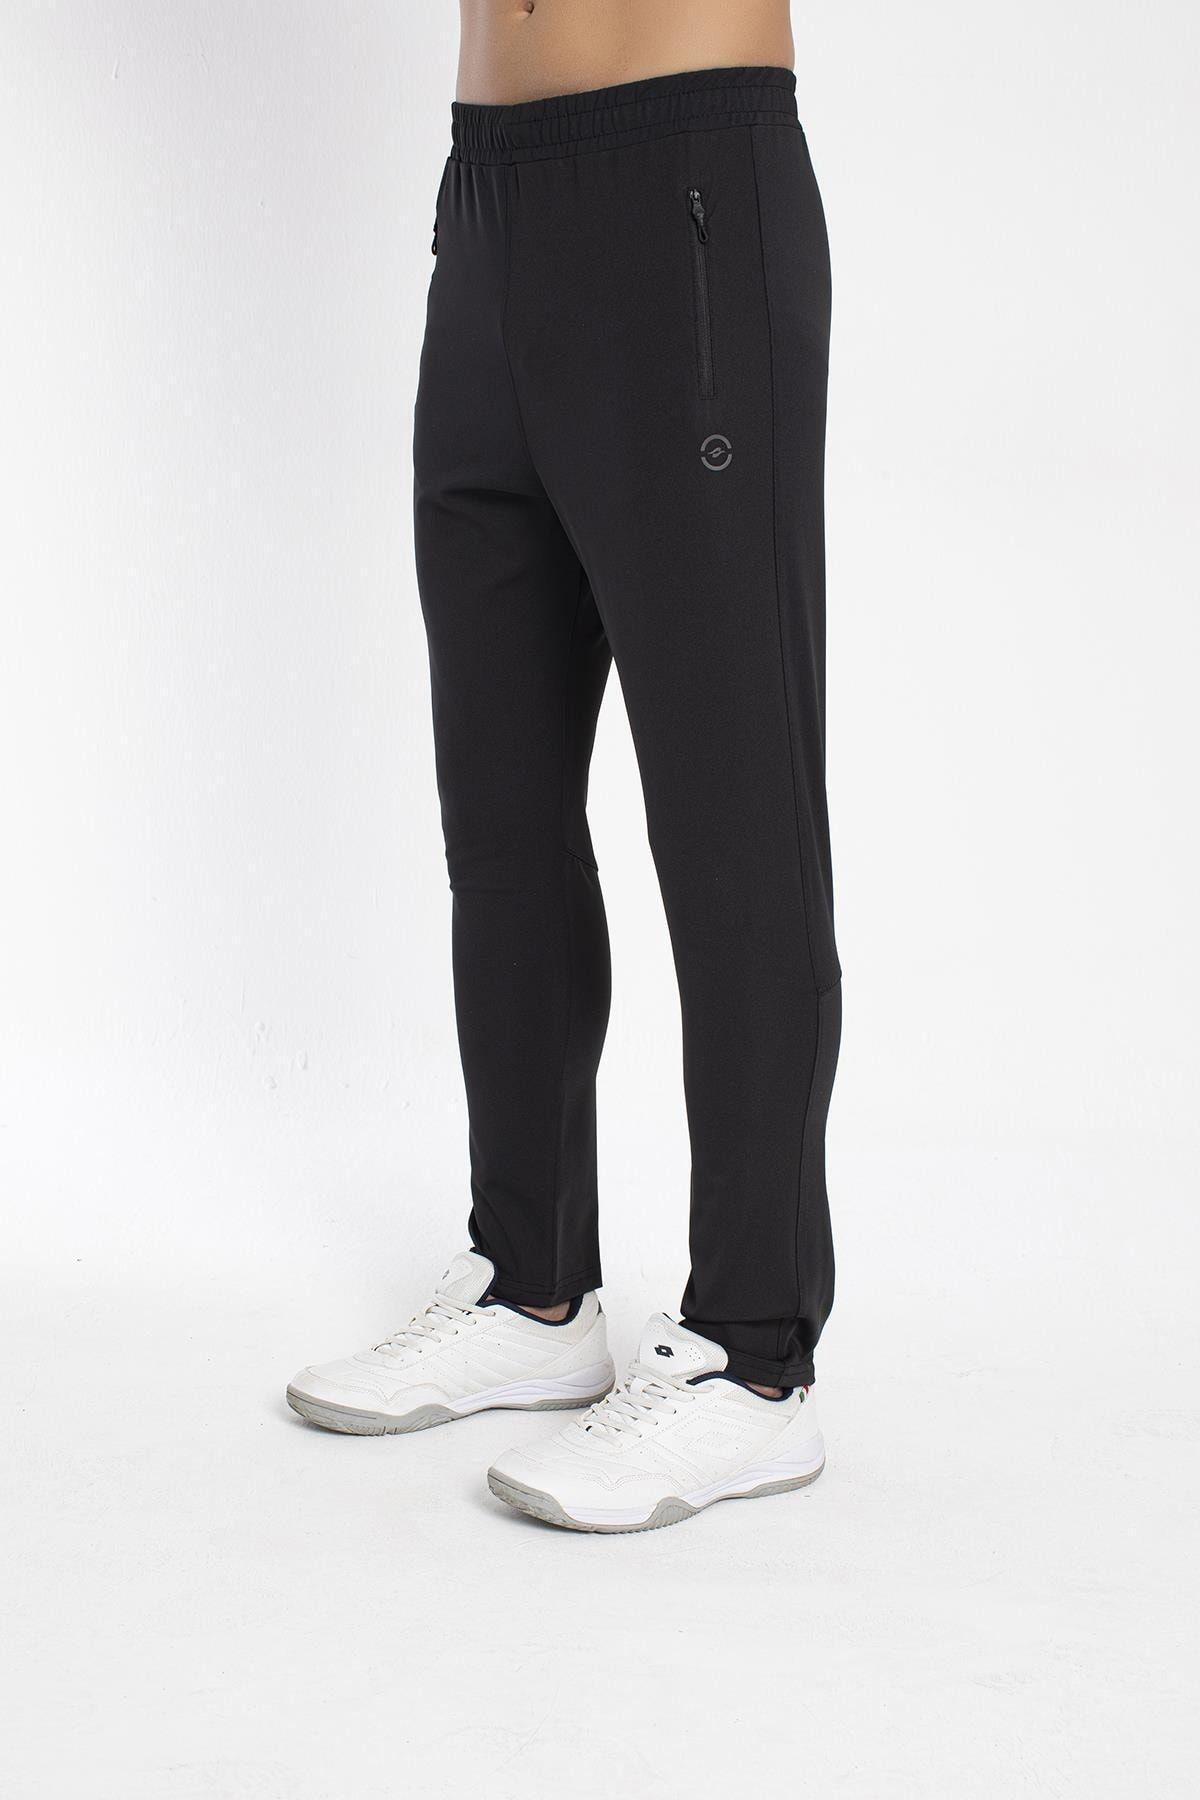 Crozwise Erkek Dalgıç Dar Paça Spor Pantolon Siyah 2201-10